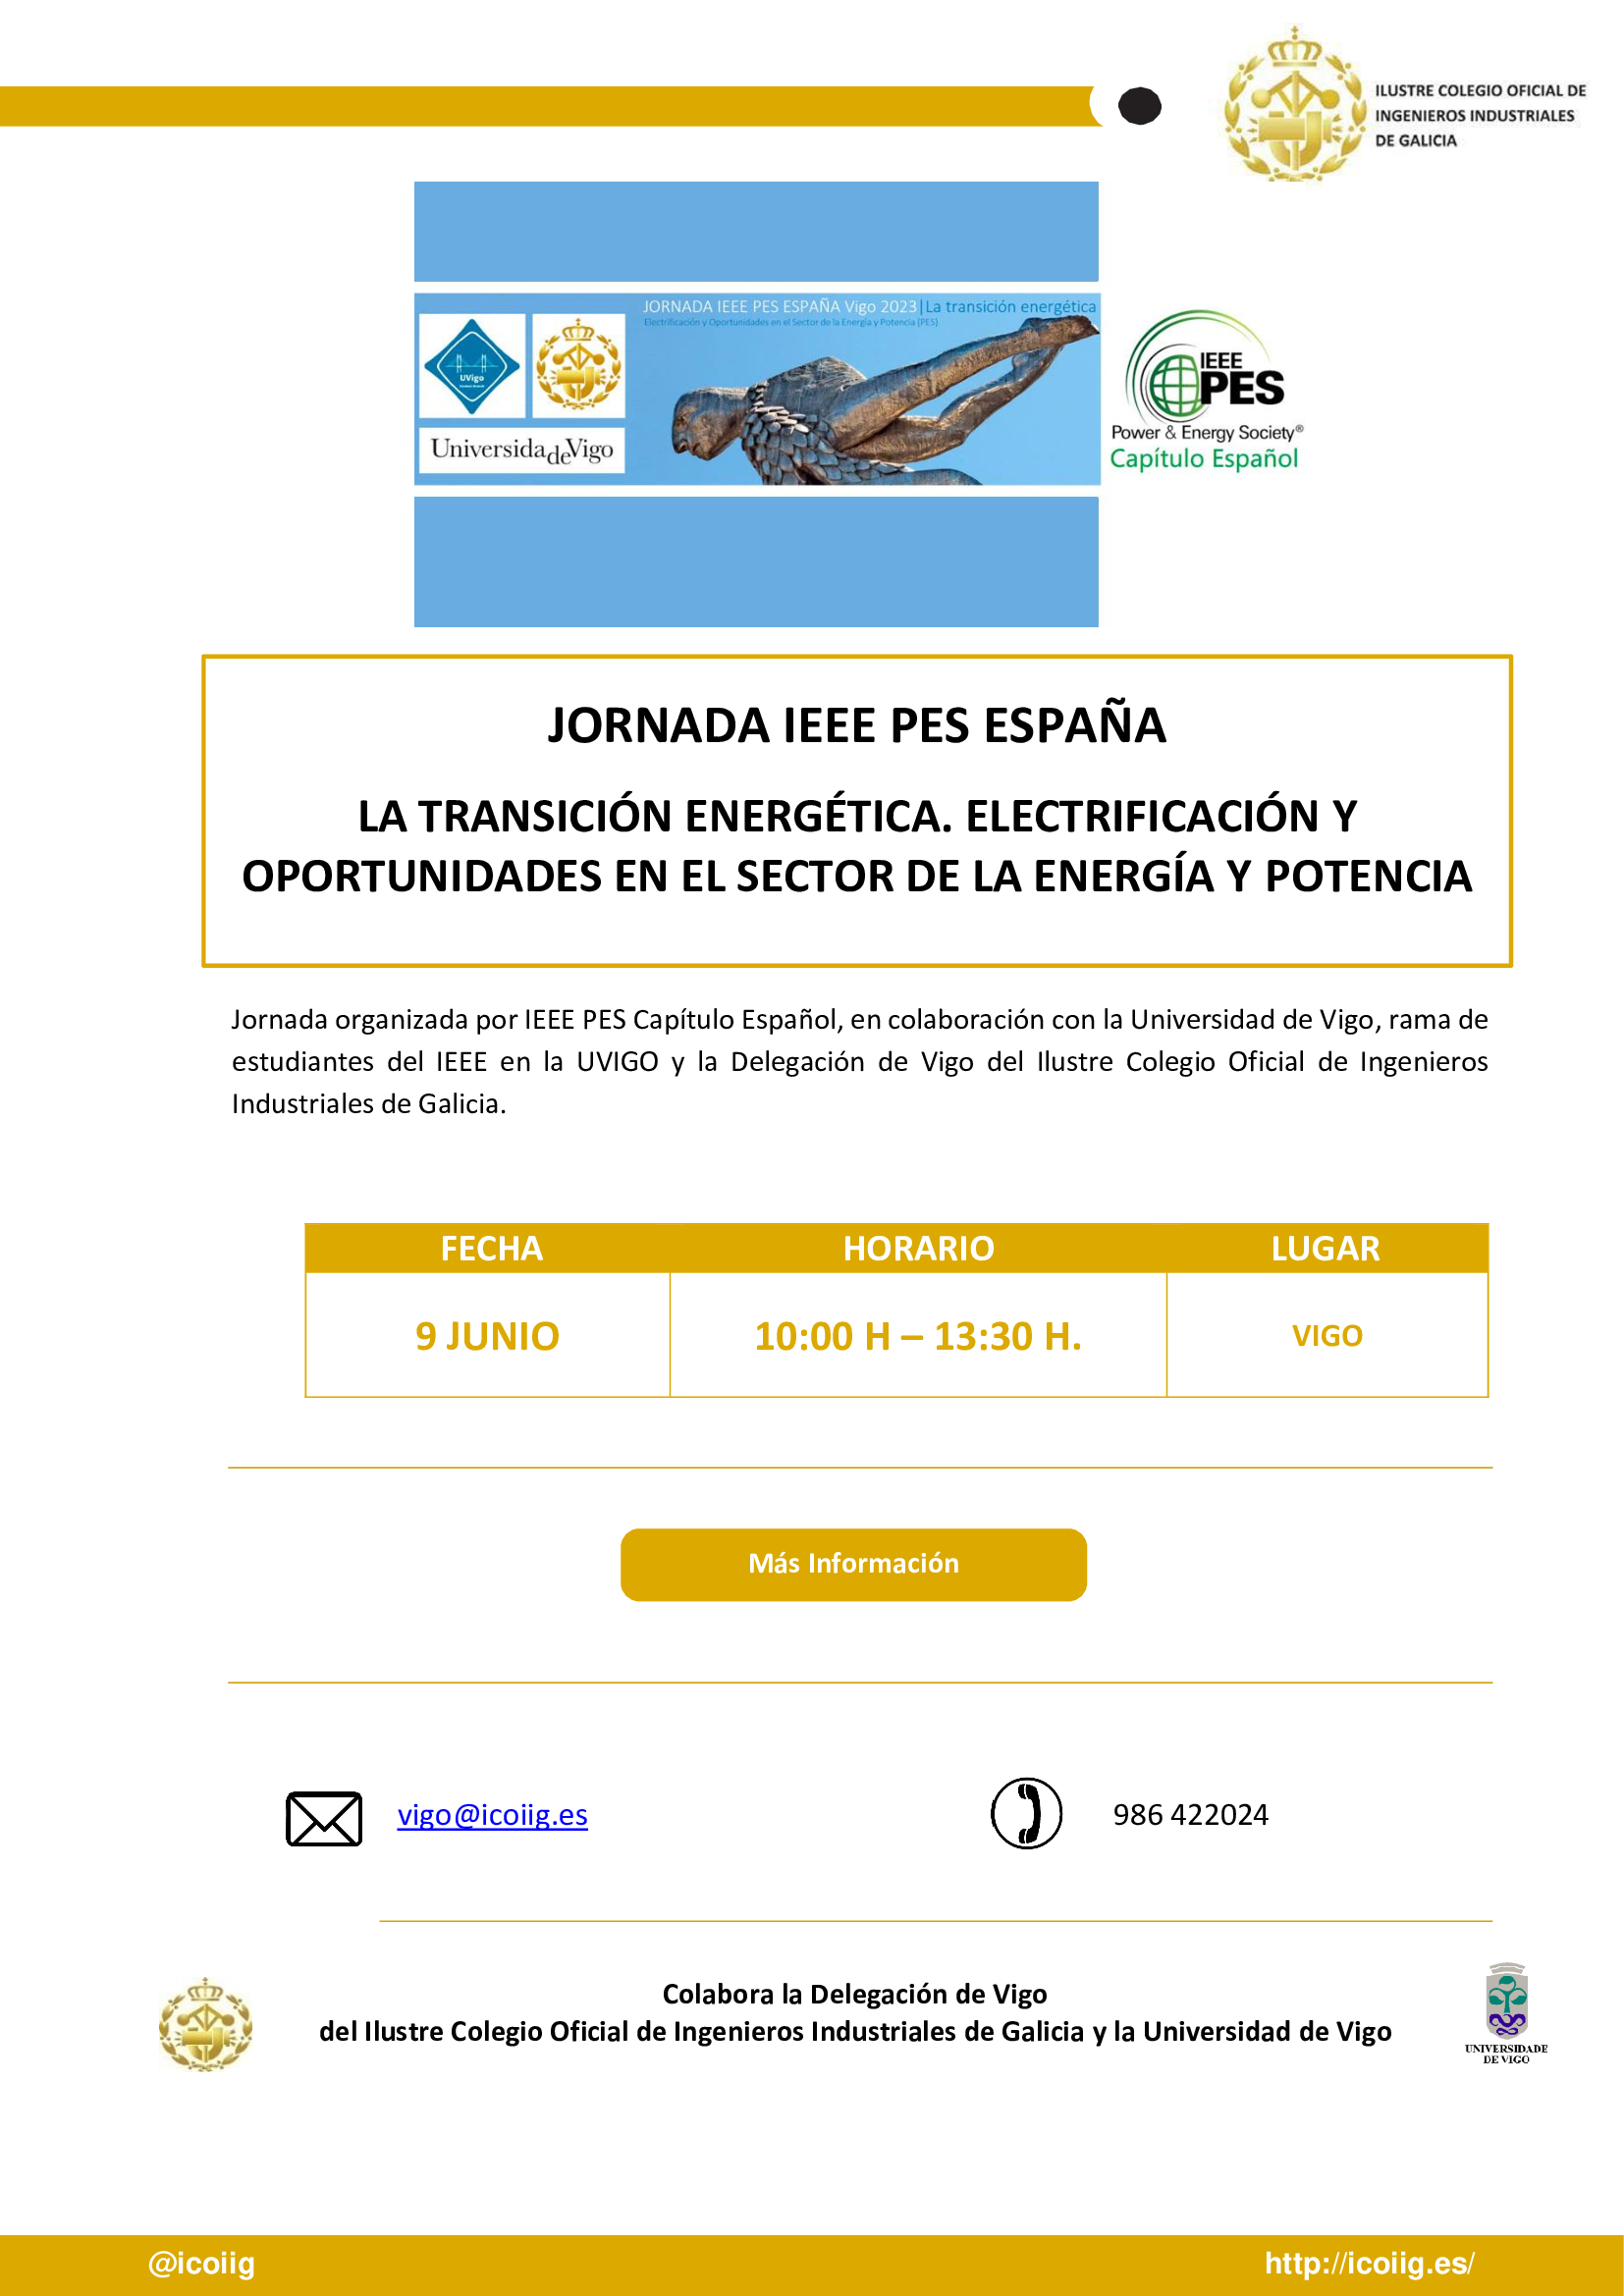 Jornada IEEE PES ESPAÑA